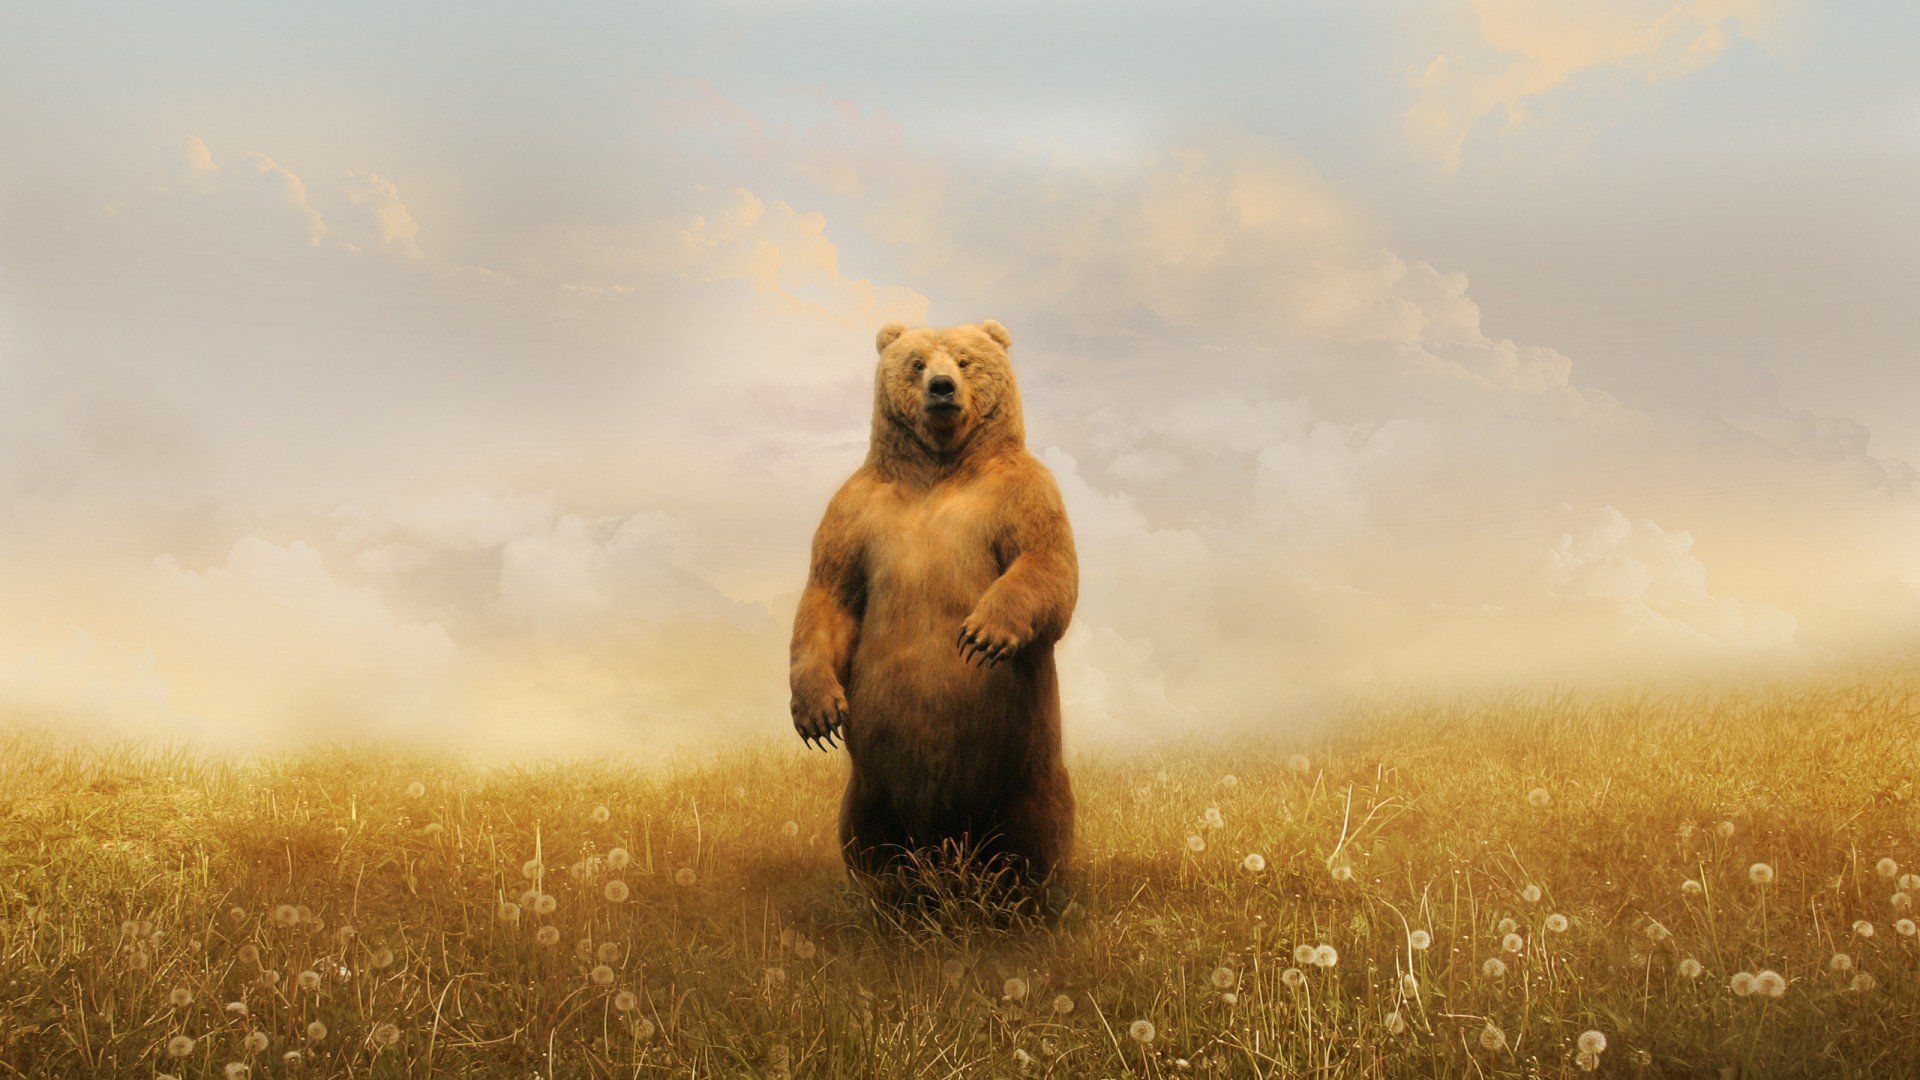 Bear In Field, HD Animals, 4k Wallpaper, Image, Background